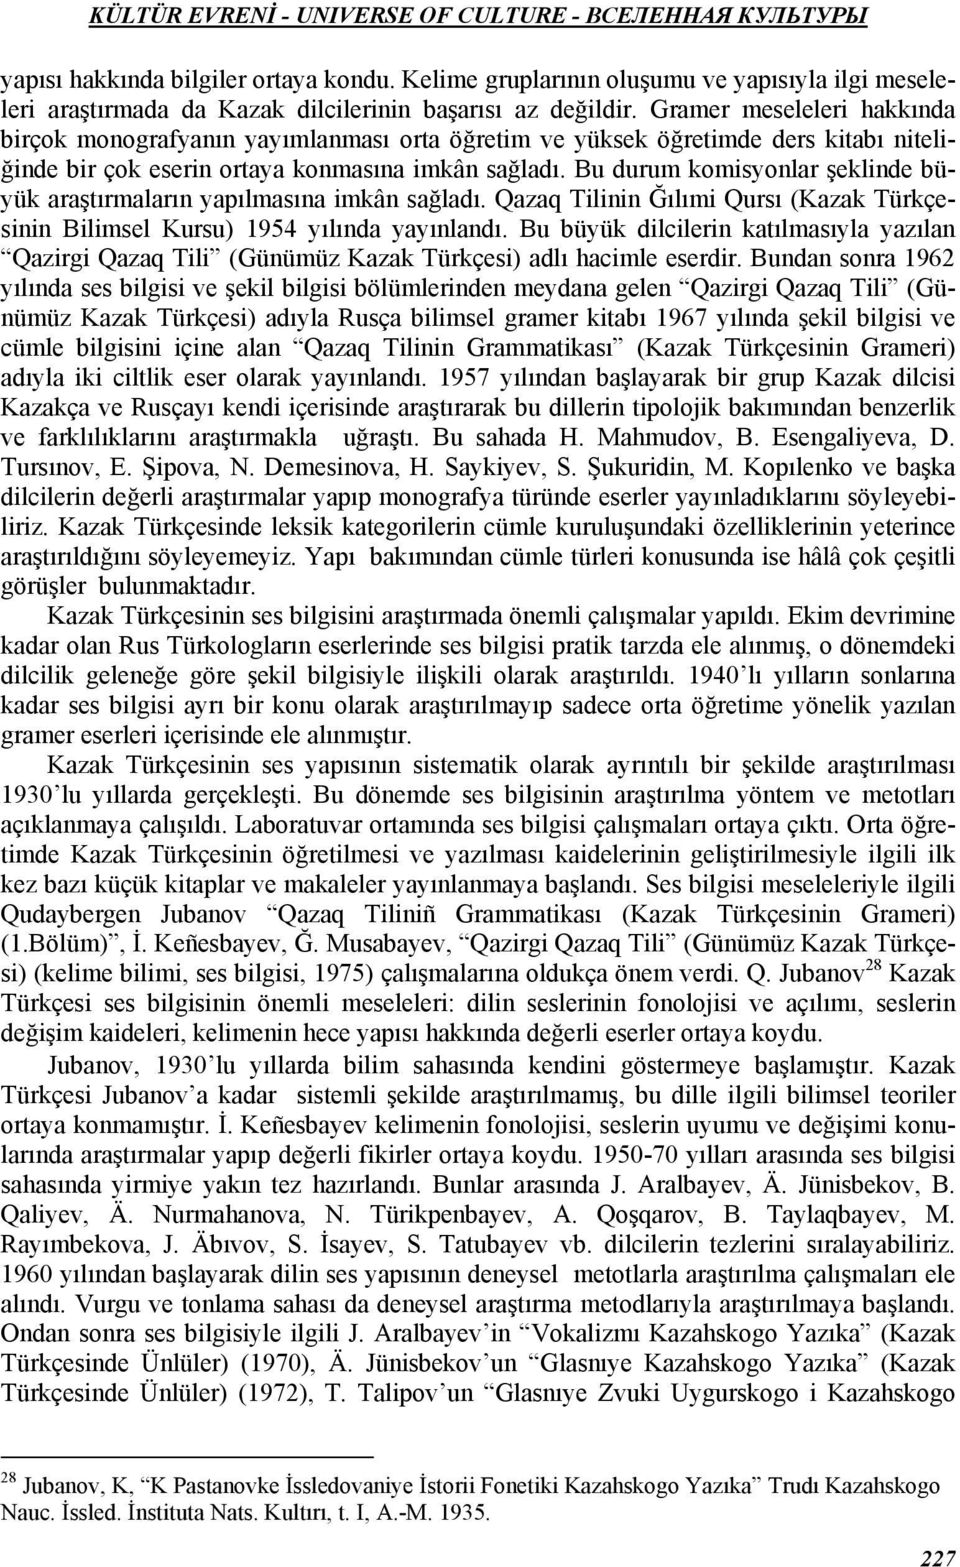 Bu durum komisyonlar şeklinde büyük araştırmaların yapılmasına imkân sağladı. Qazaq Tilinin Ğılımi Qursı (Kazak Türkçesinin Bilimsel Kursu) 1954 yılında yayınlandı.